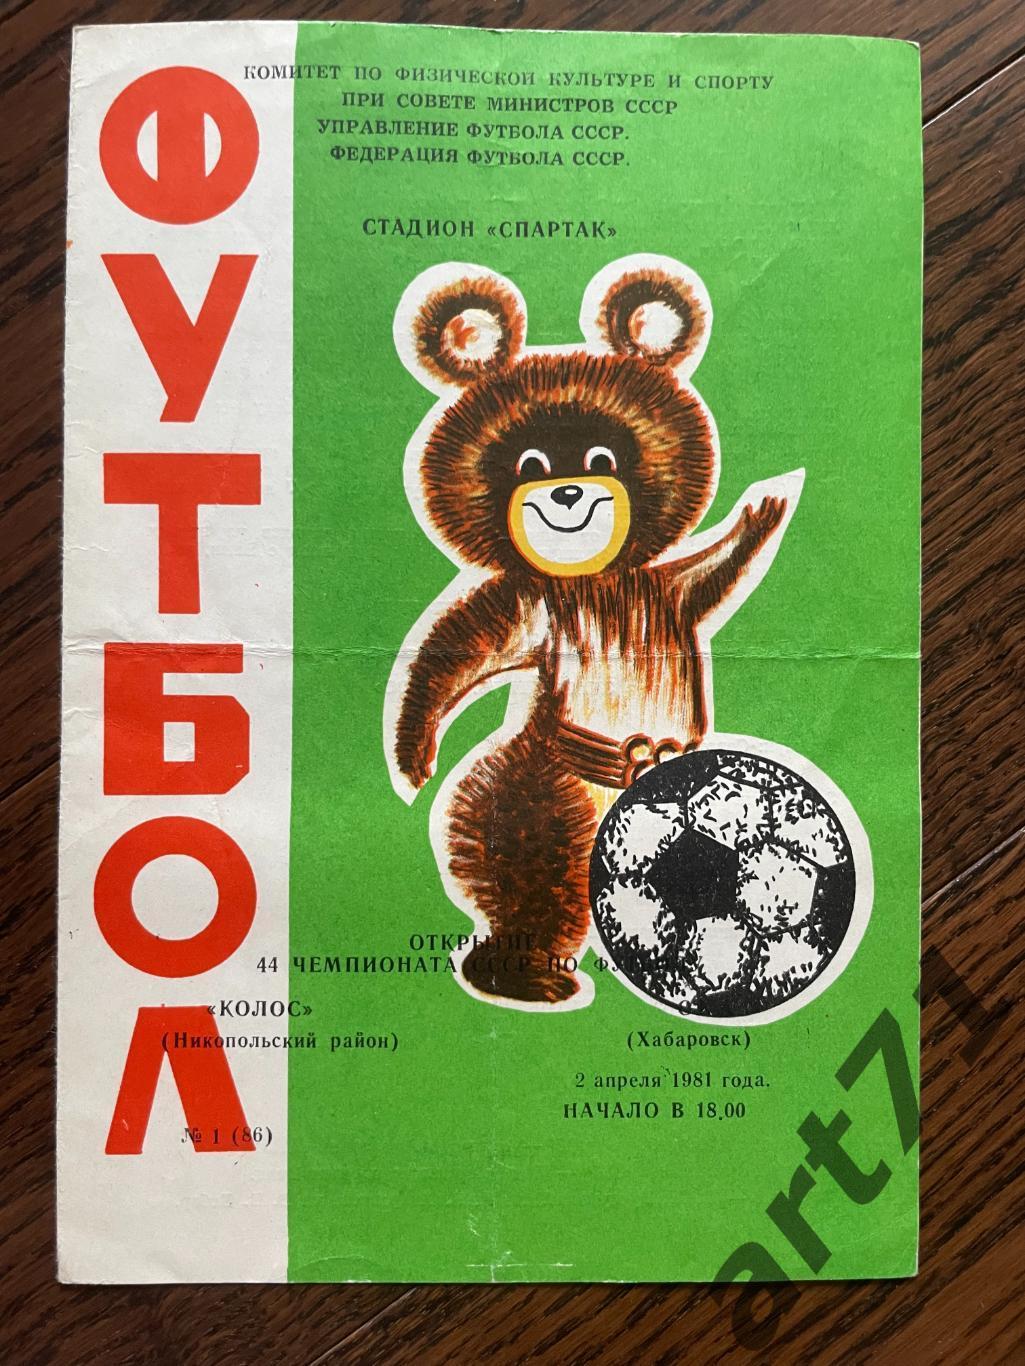 Колос Никополь - СКА Хабаровск 02.04.1981 редкая обложка